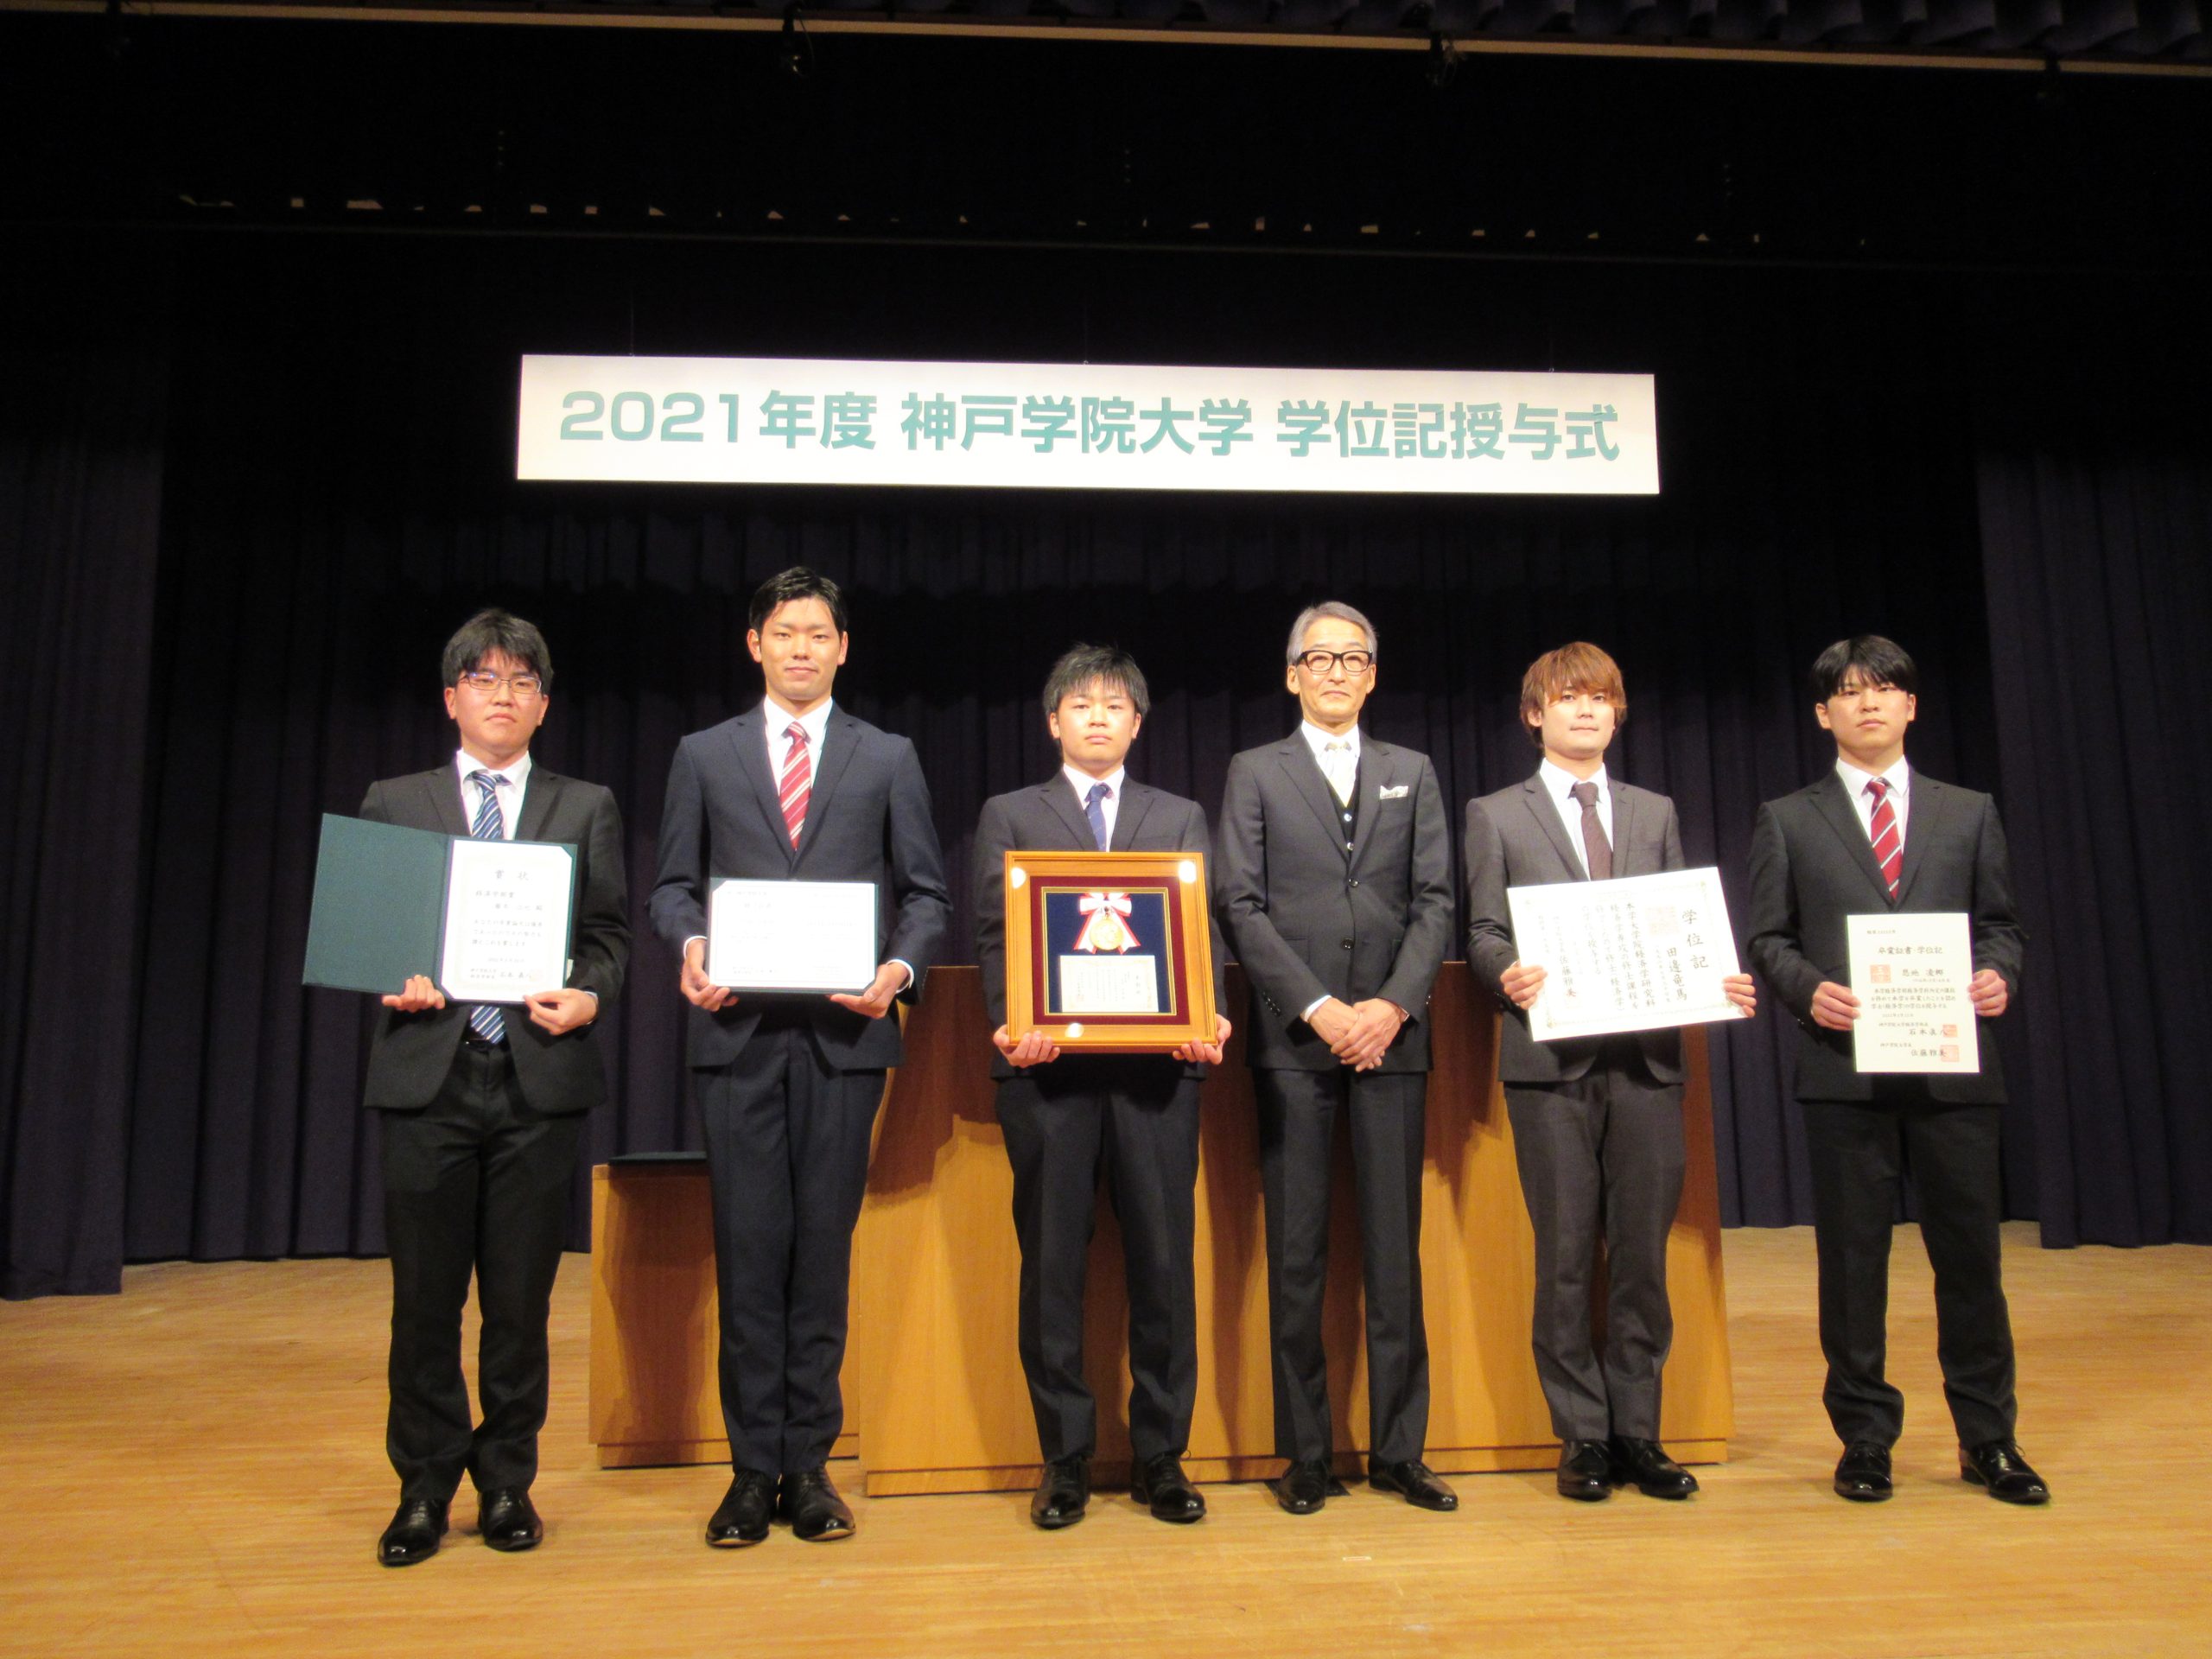 左から藤本さん、伊達さん、石田さん、石本学部長、田邊さん、恩地さん